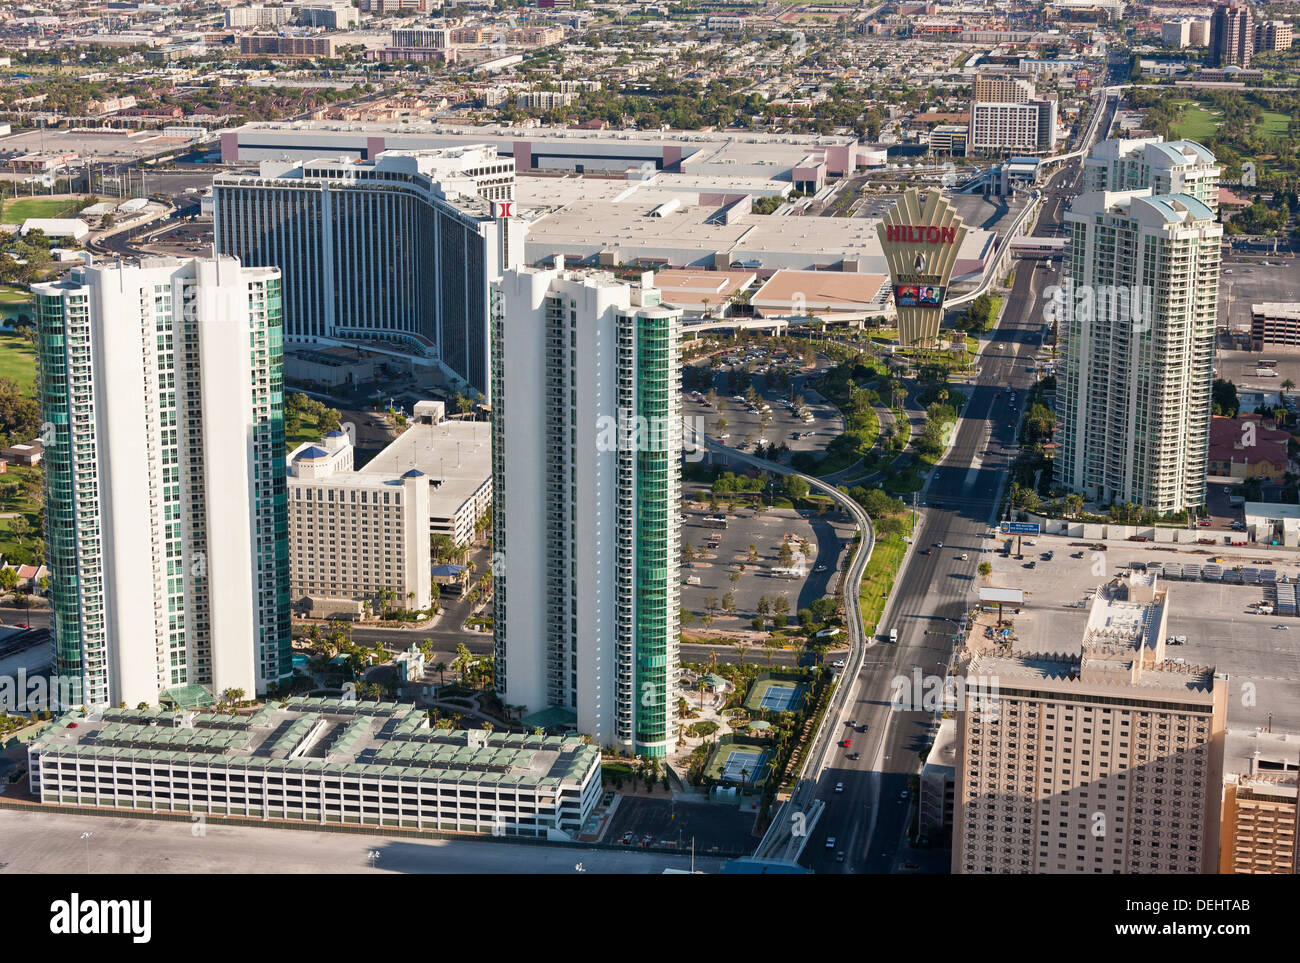 Las Vegas Nevada USA Paradise Road e Hilton Hotel visto dalla torre della stratosfera casinò e hotel. JMH5457 Foto Stock